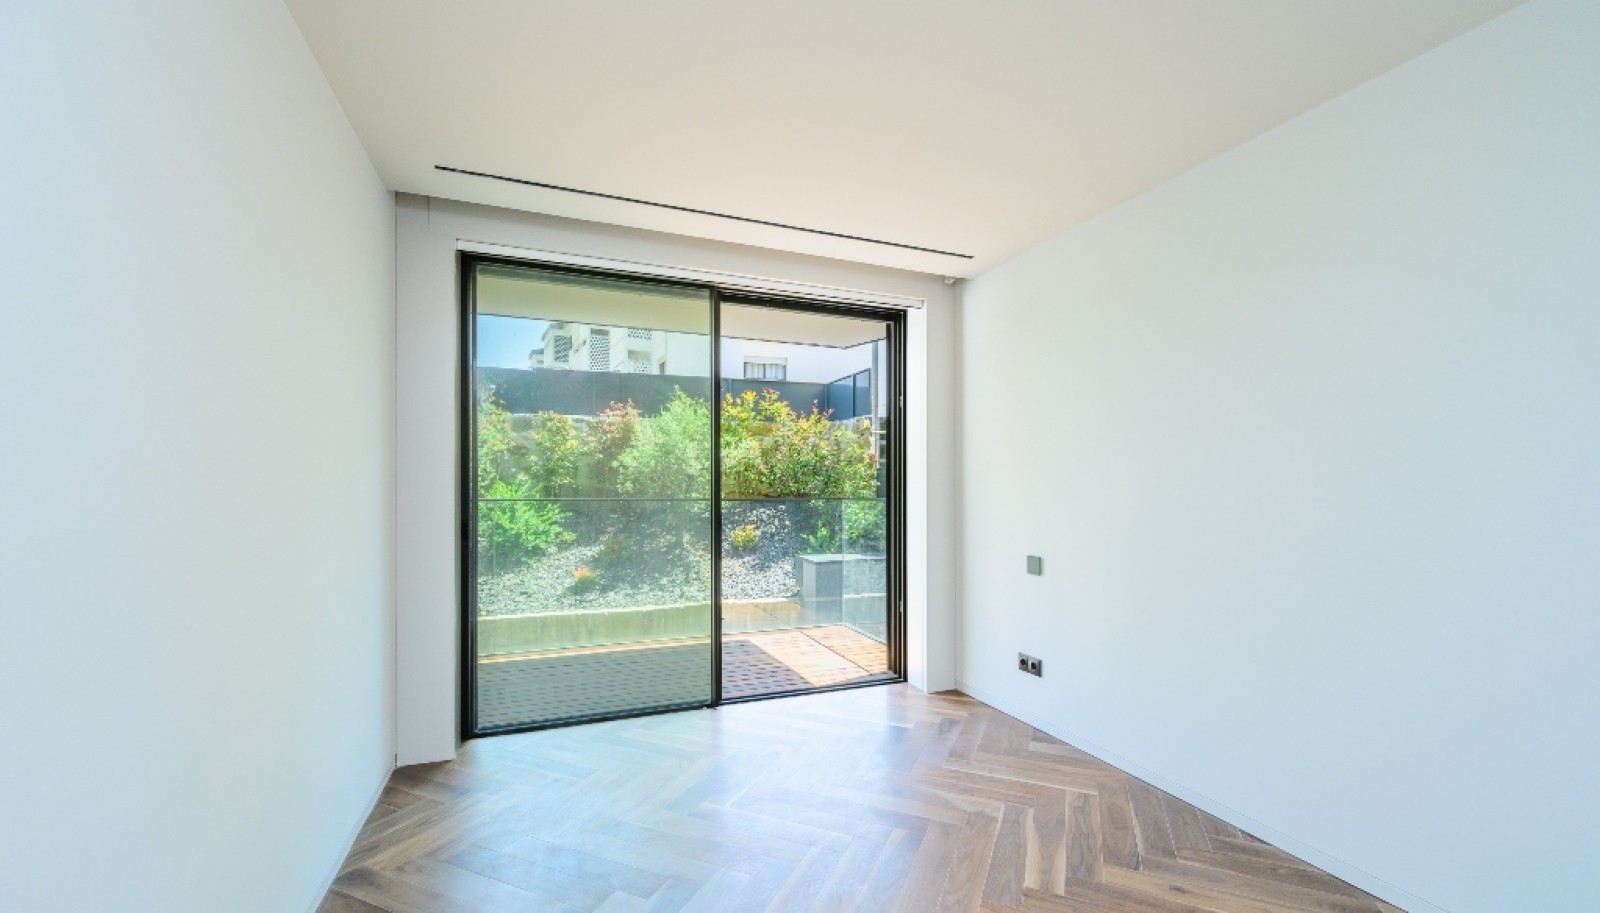 Venda: Apartamento novo com terraço, na Boavista, Porto_267517